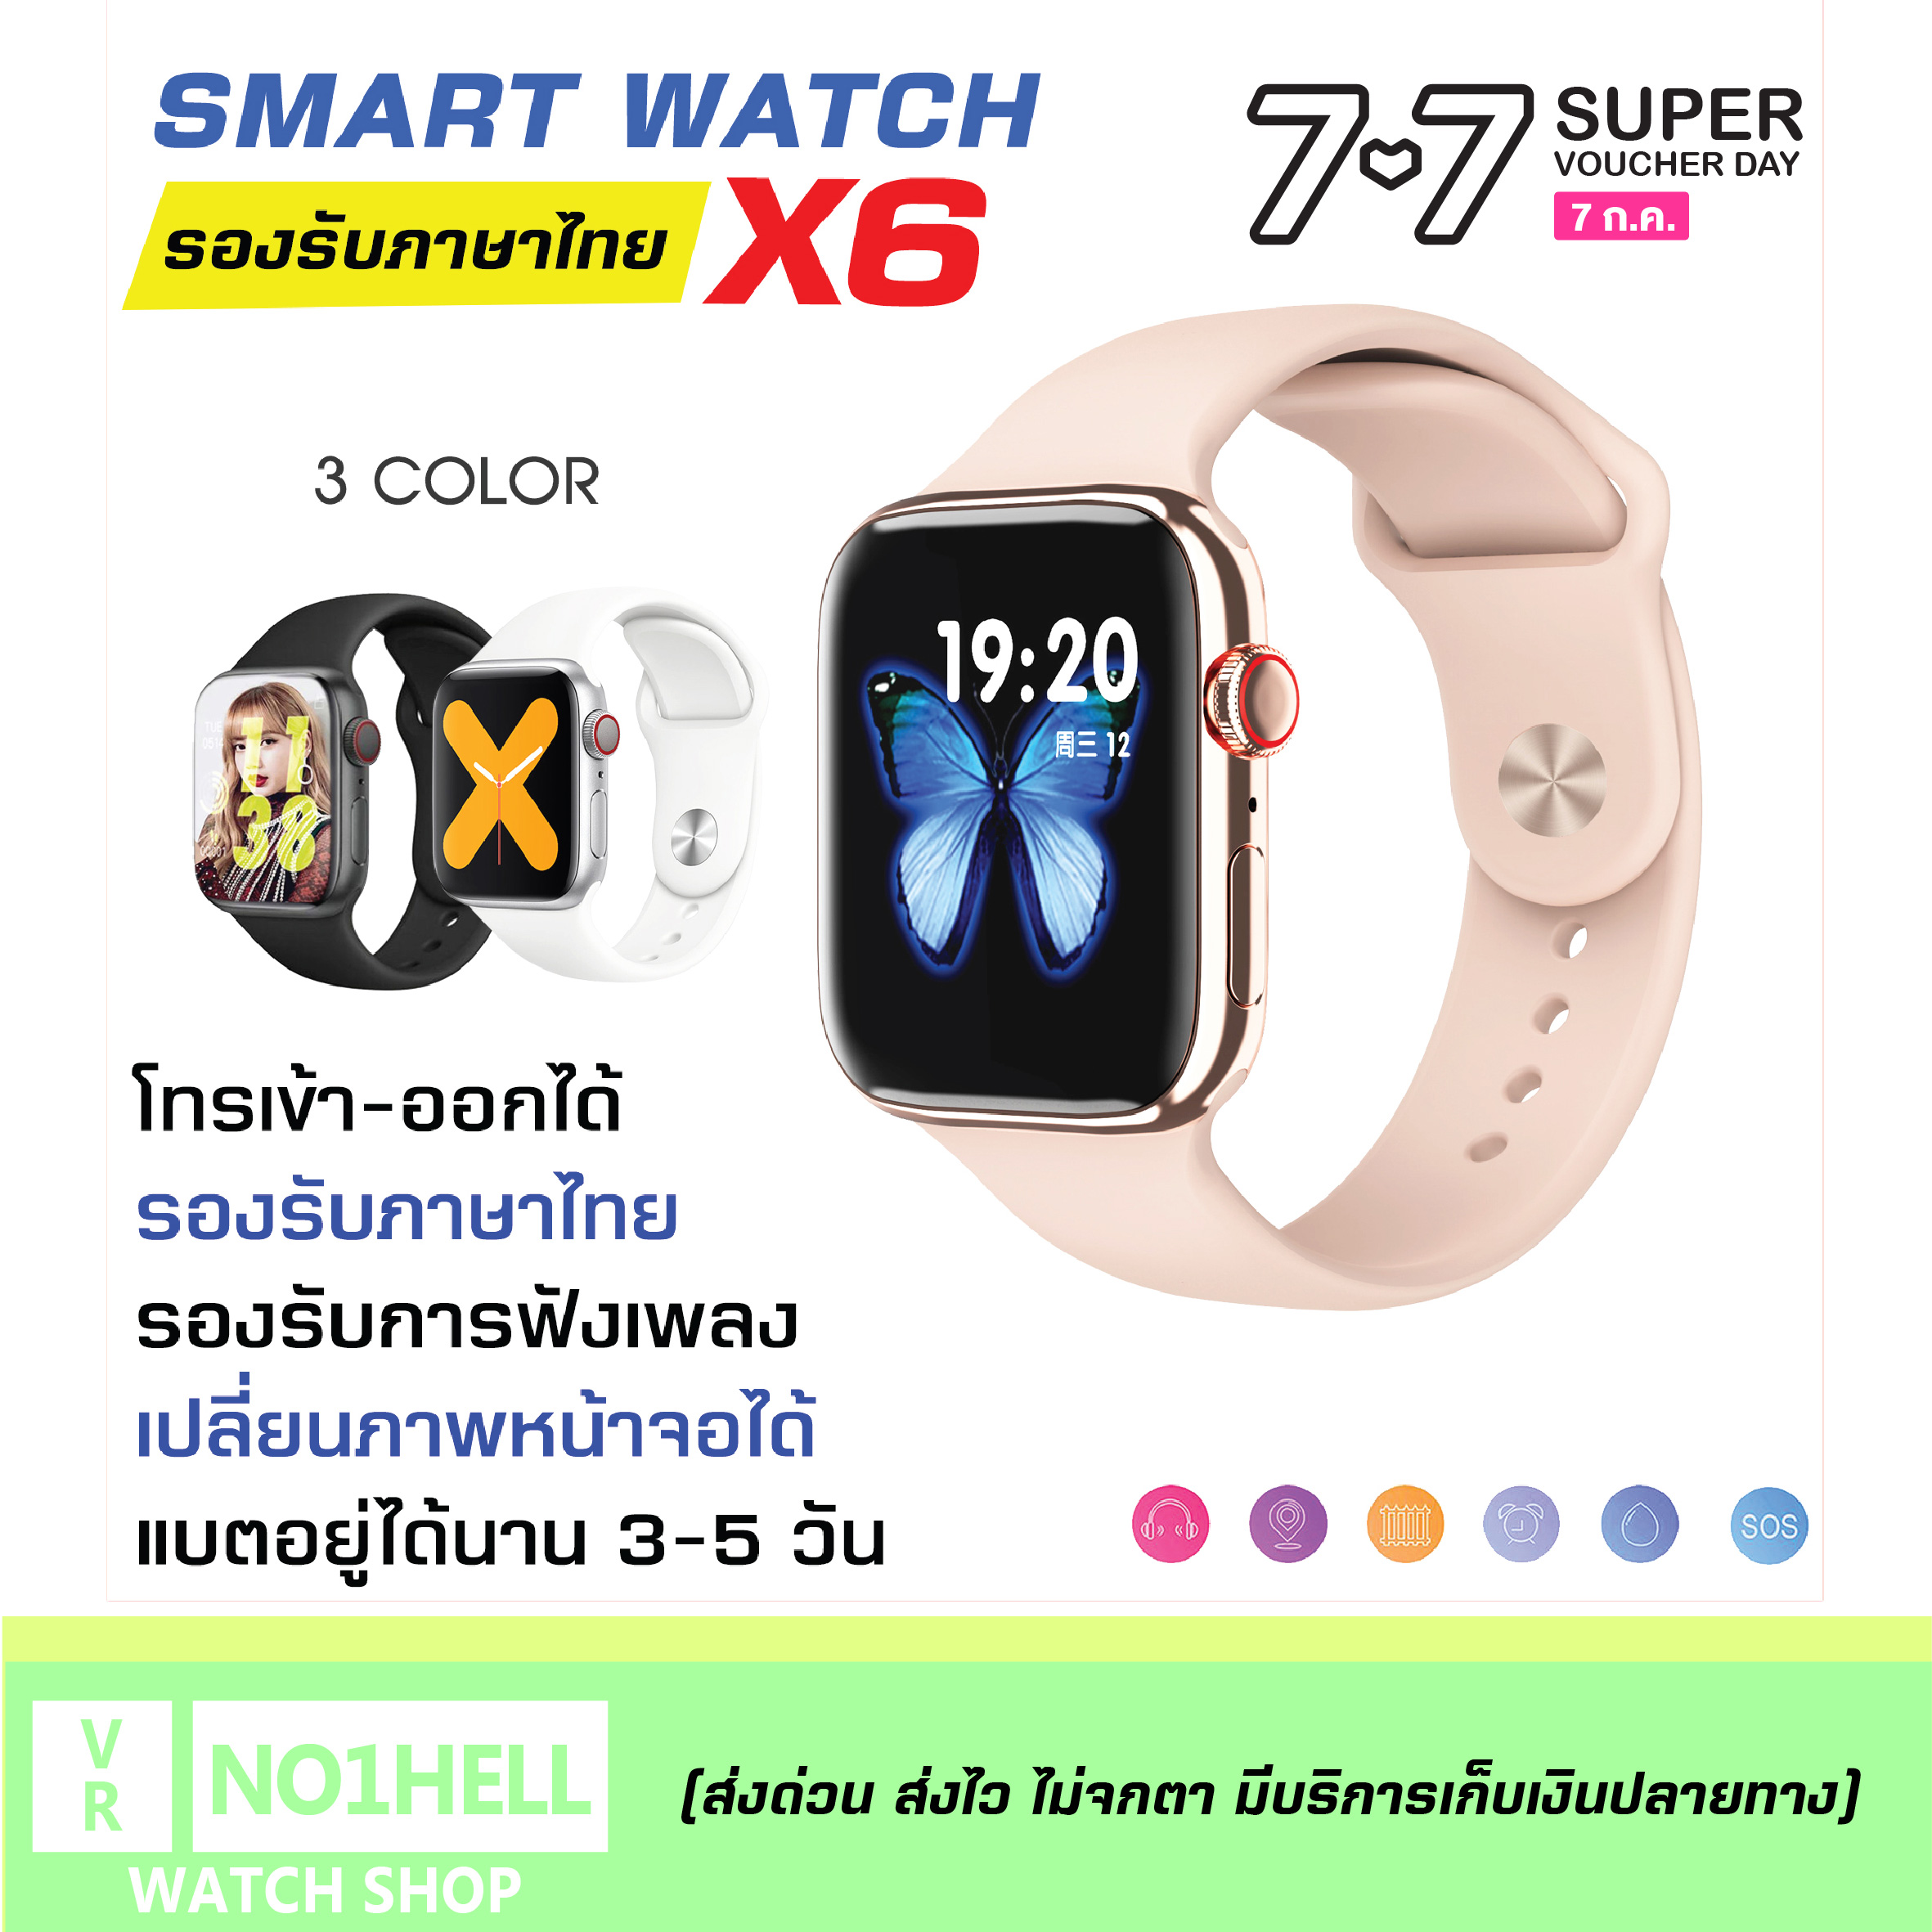 【ส่งจากประเทศไทย】smart watch x7 pro max / x6 นาฬิกาสมาทวอช2021 นาฟิกาโทรศัพท์ นาฟิกาสมาทวอท นาฟิกาข้อมือ เมนูภาษาไทย เปลี่ยนหน้าจอได้ โทรได้ แจ้งเตือนข้อความ ของแท้100% มีบริการเก็บเงินปลายทาง